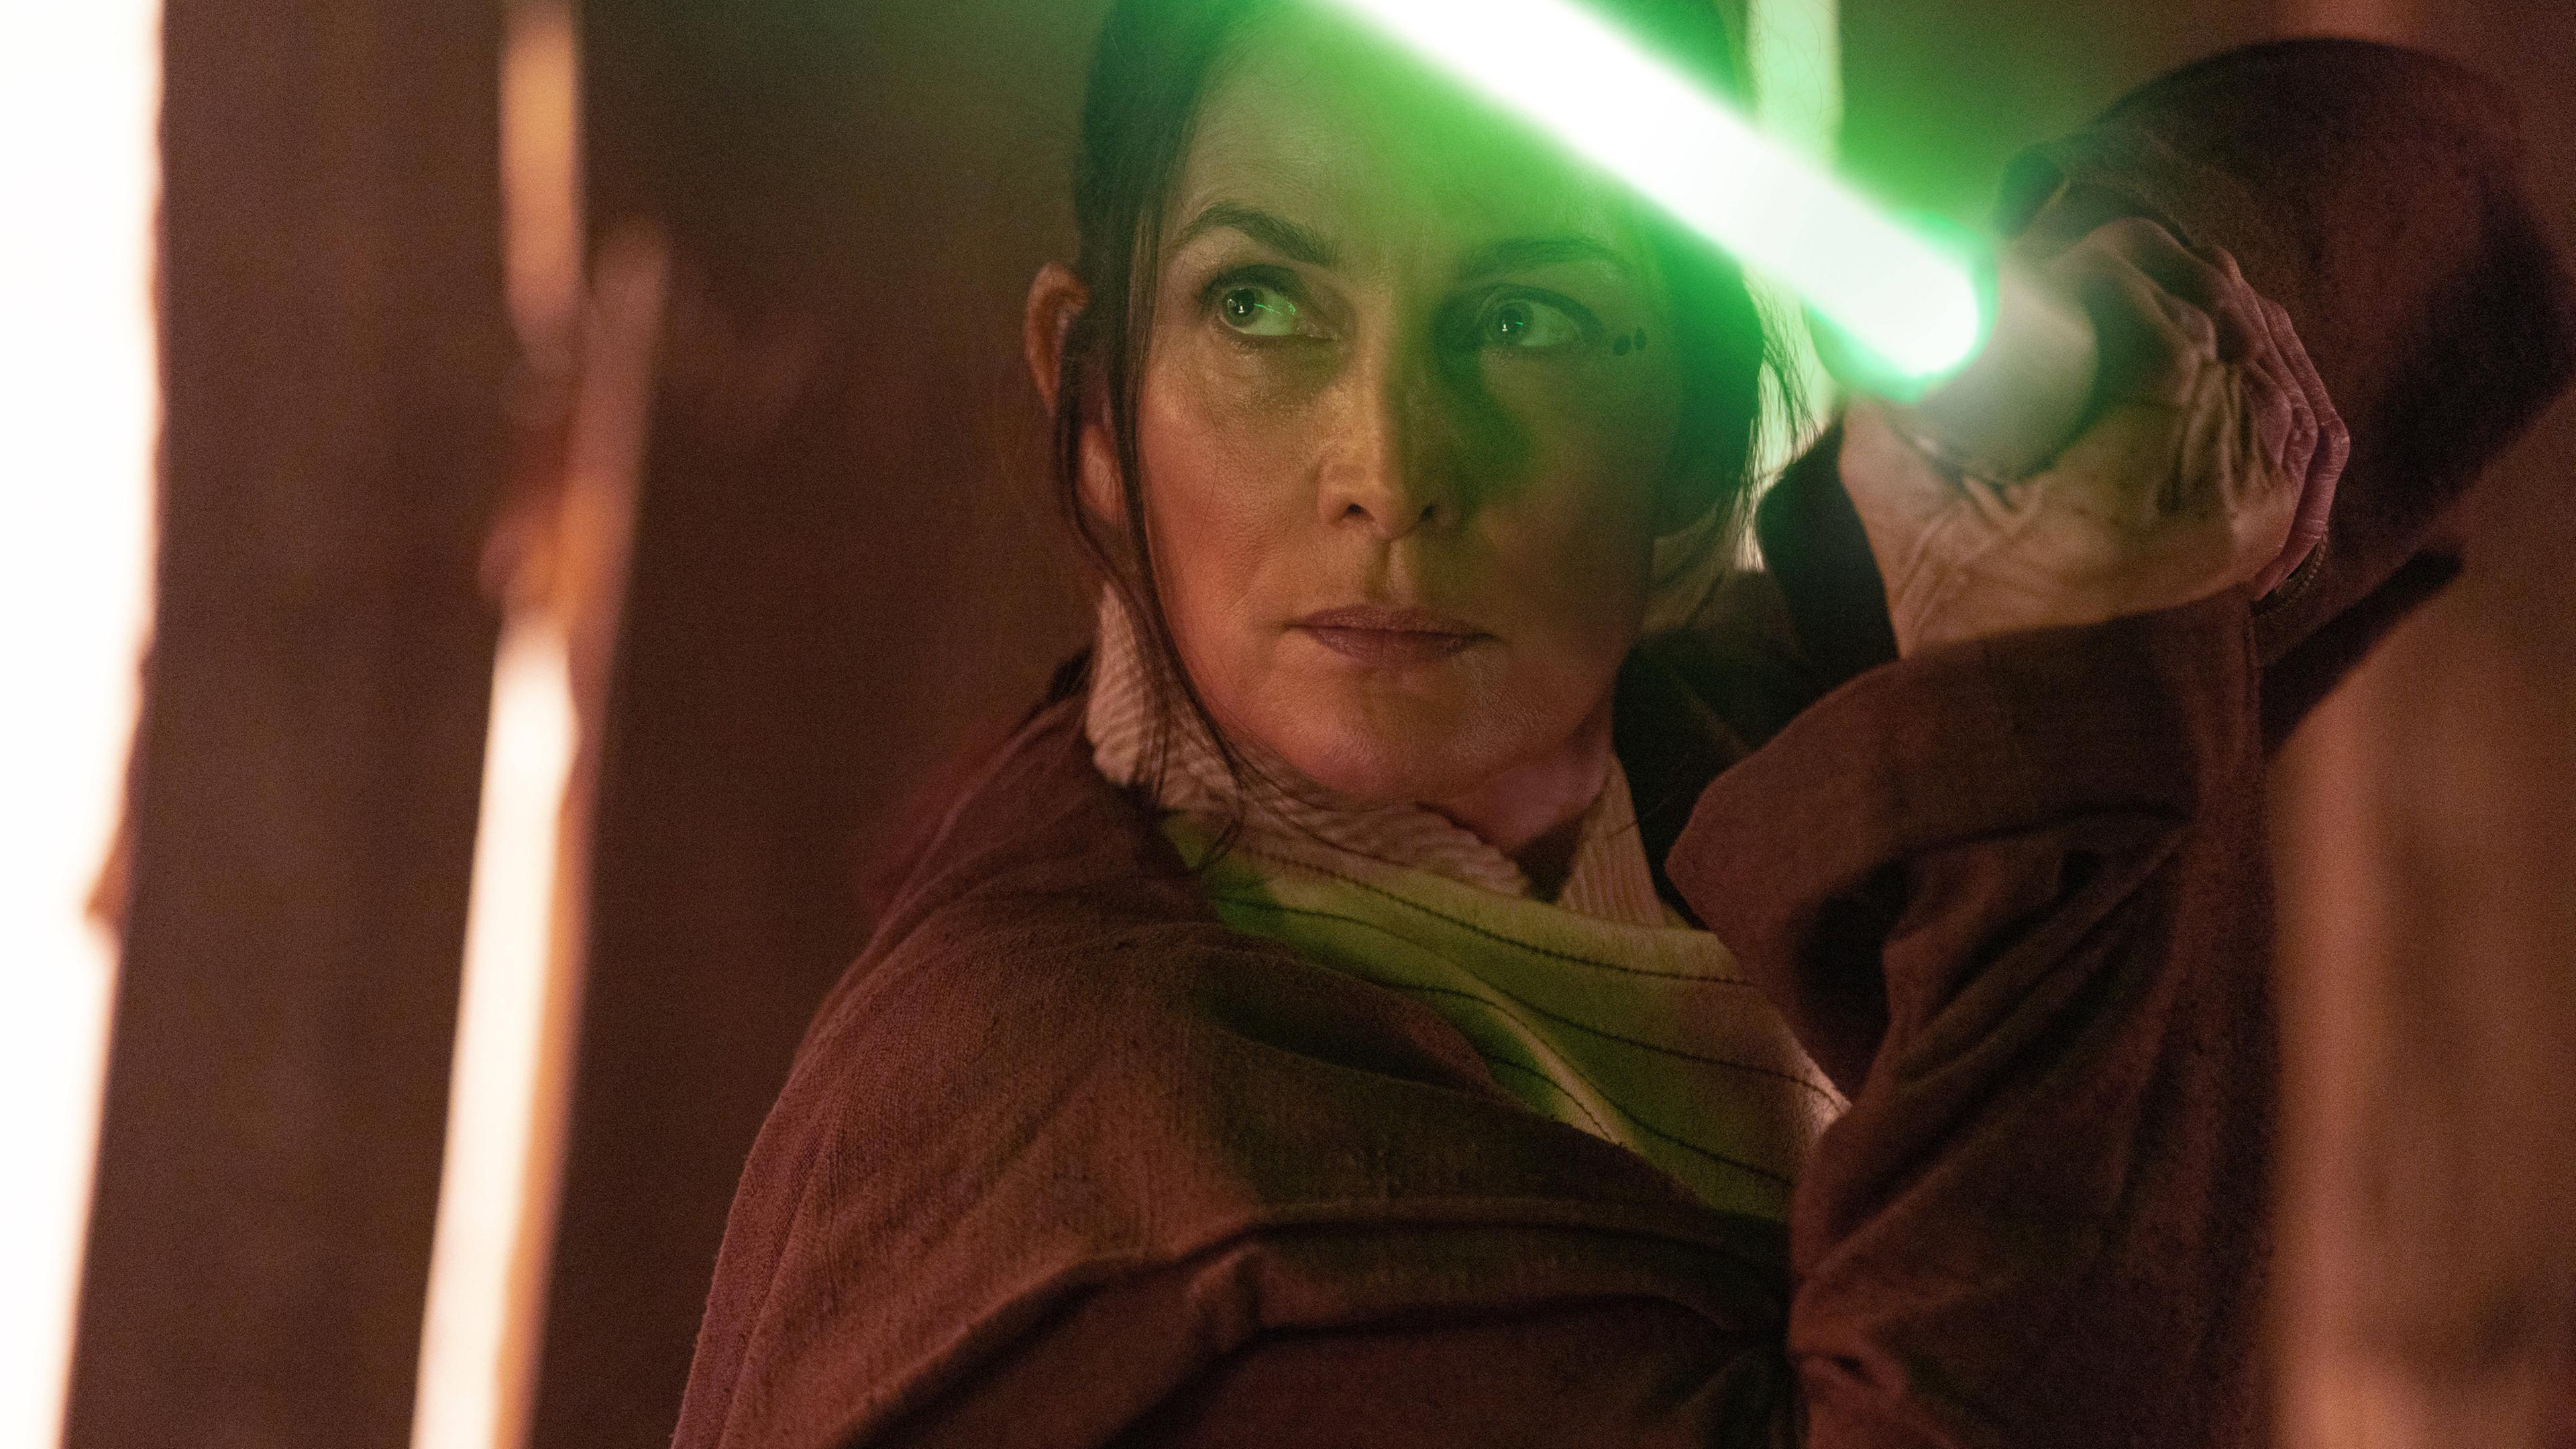 Aufnahme aus Star Wars: The Acolyte, in welcher eine Frau ein Lichtschwert trägt.